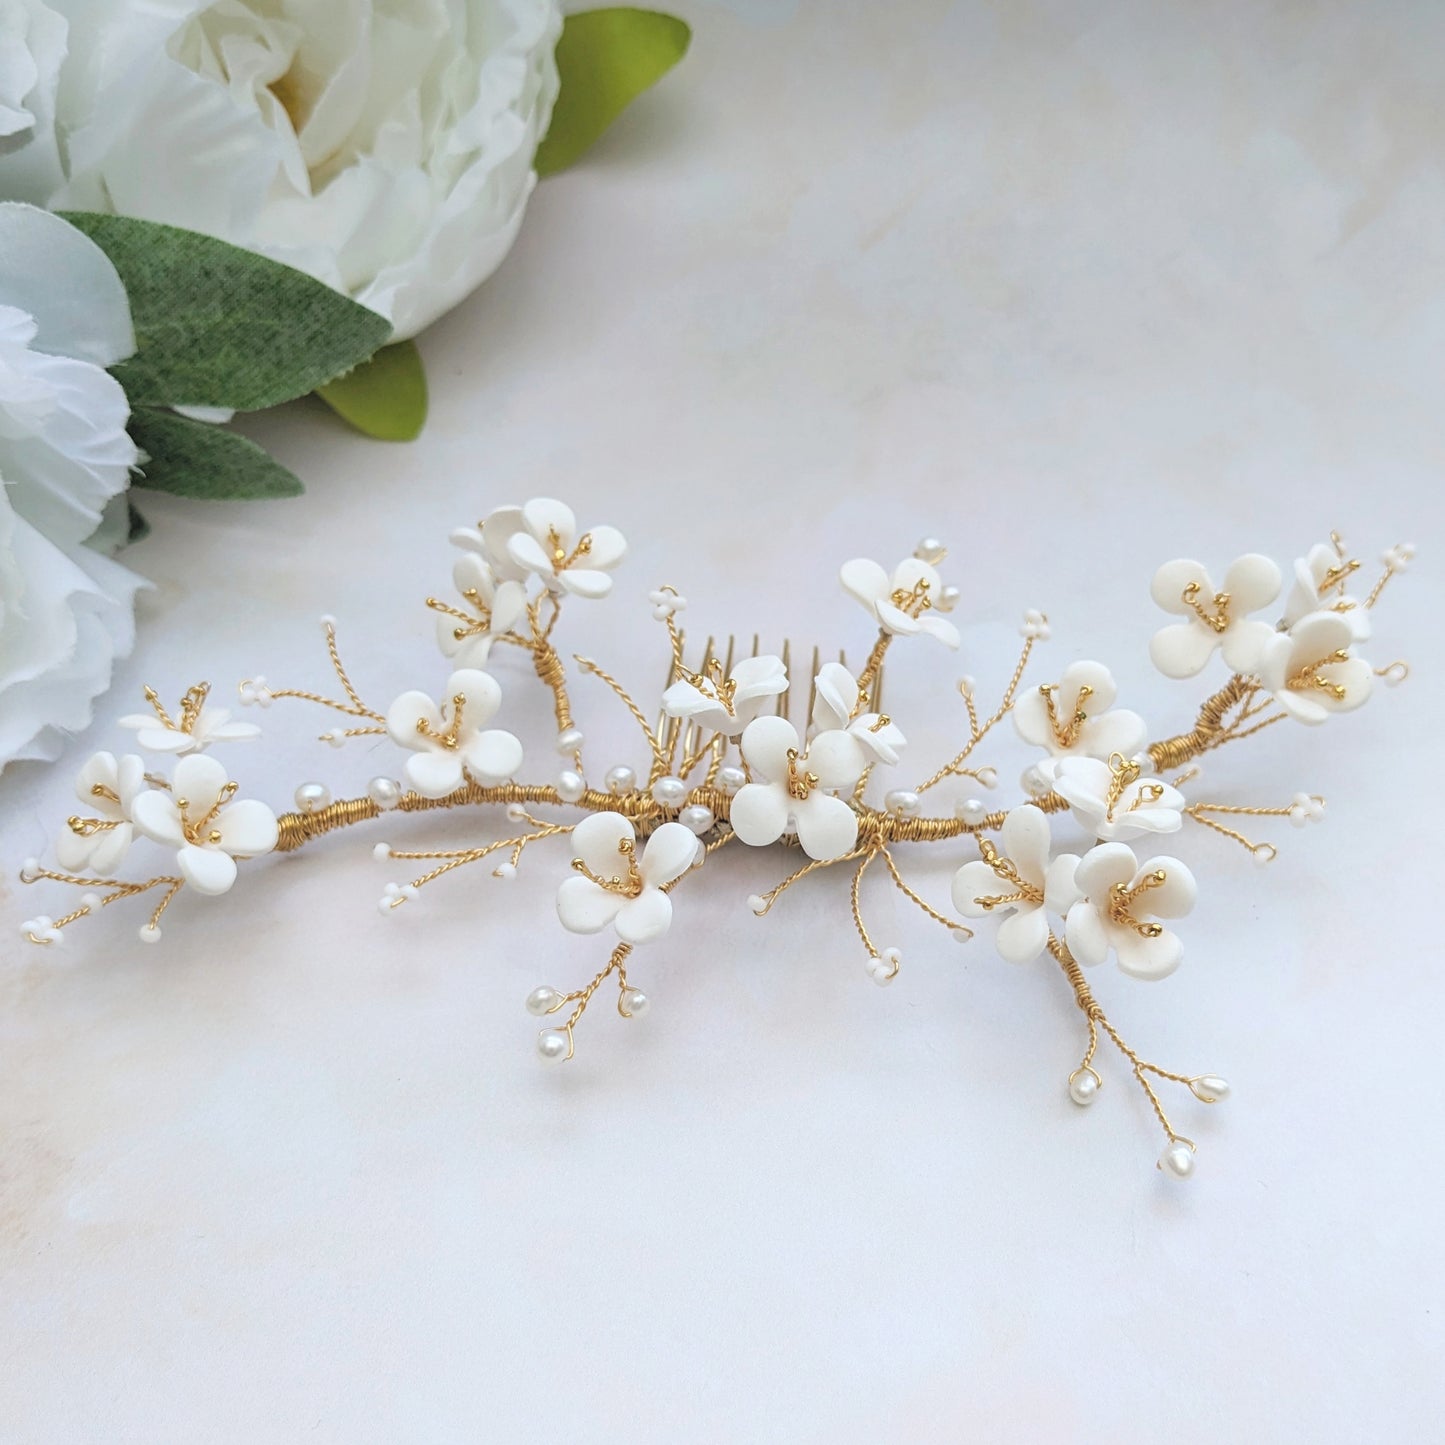 Modern floral wedding hair accessories for brides - Susie Warner